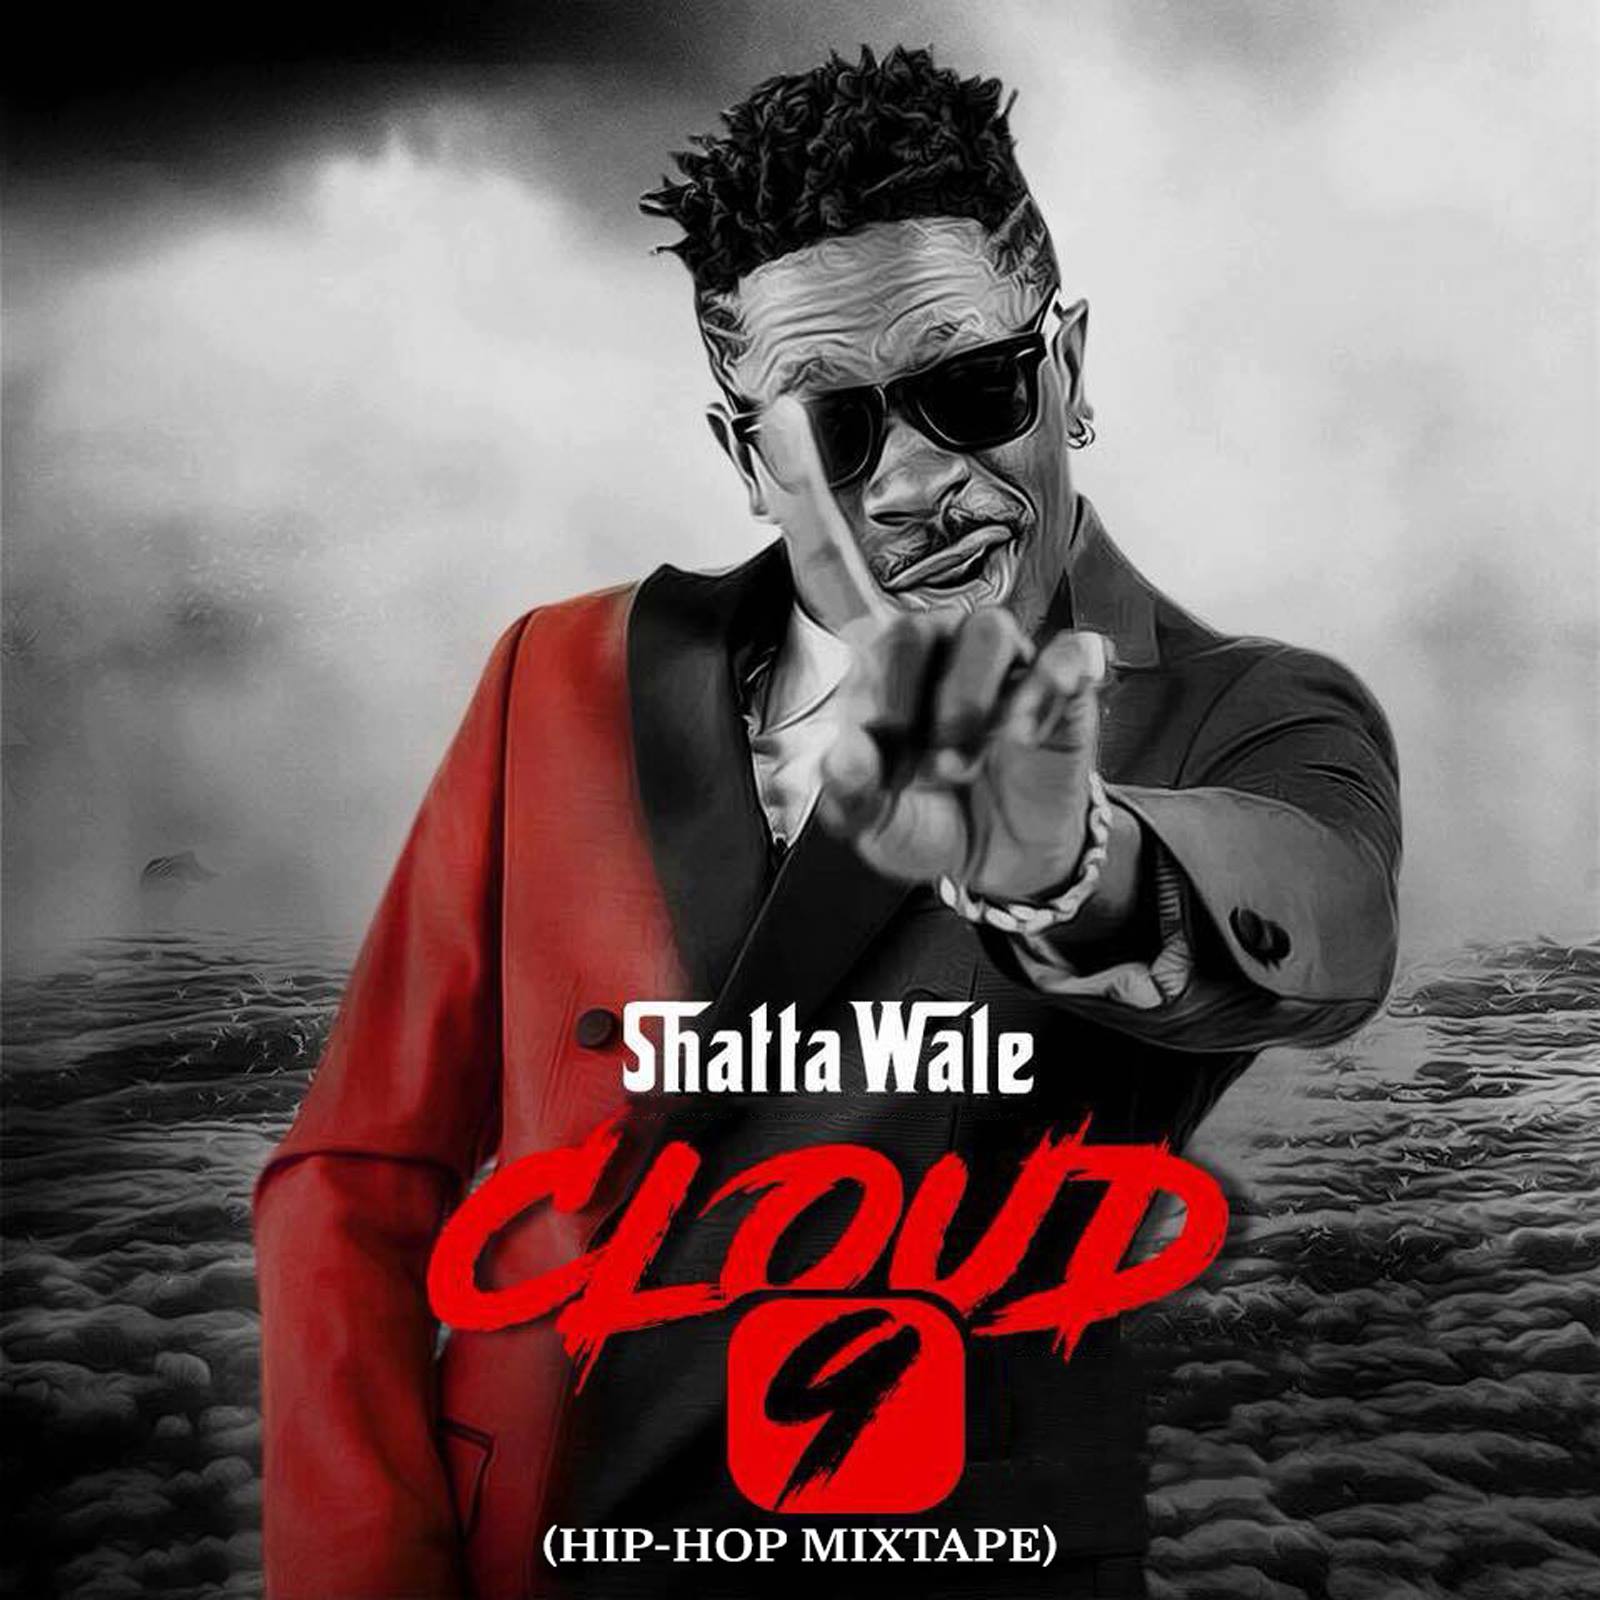 Cloud 9 by Shatta Wale